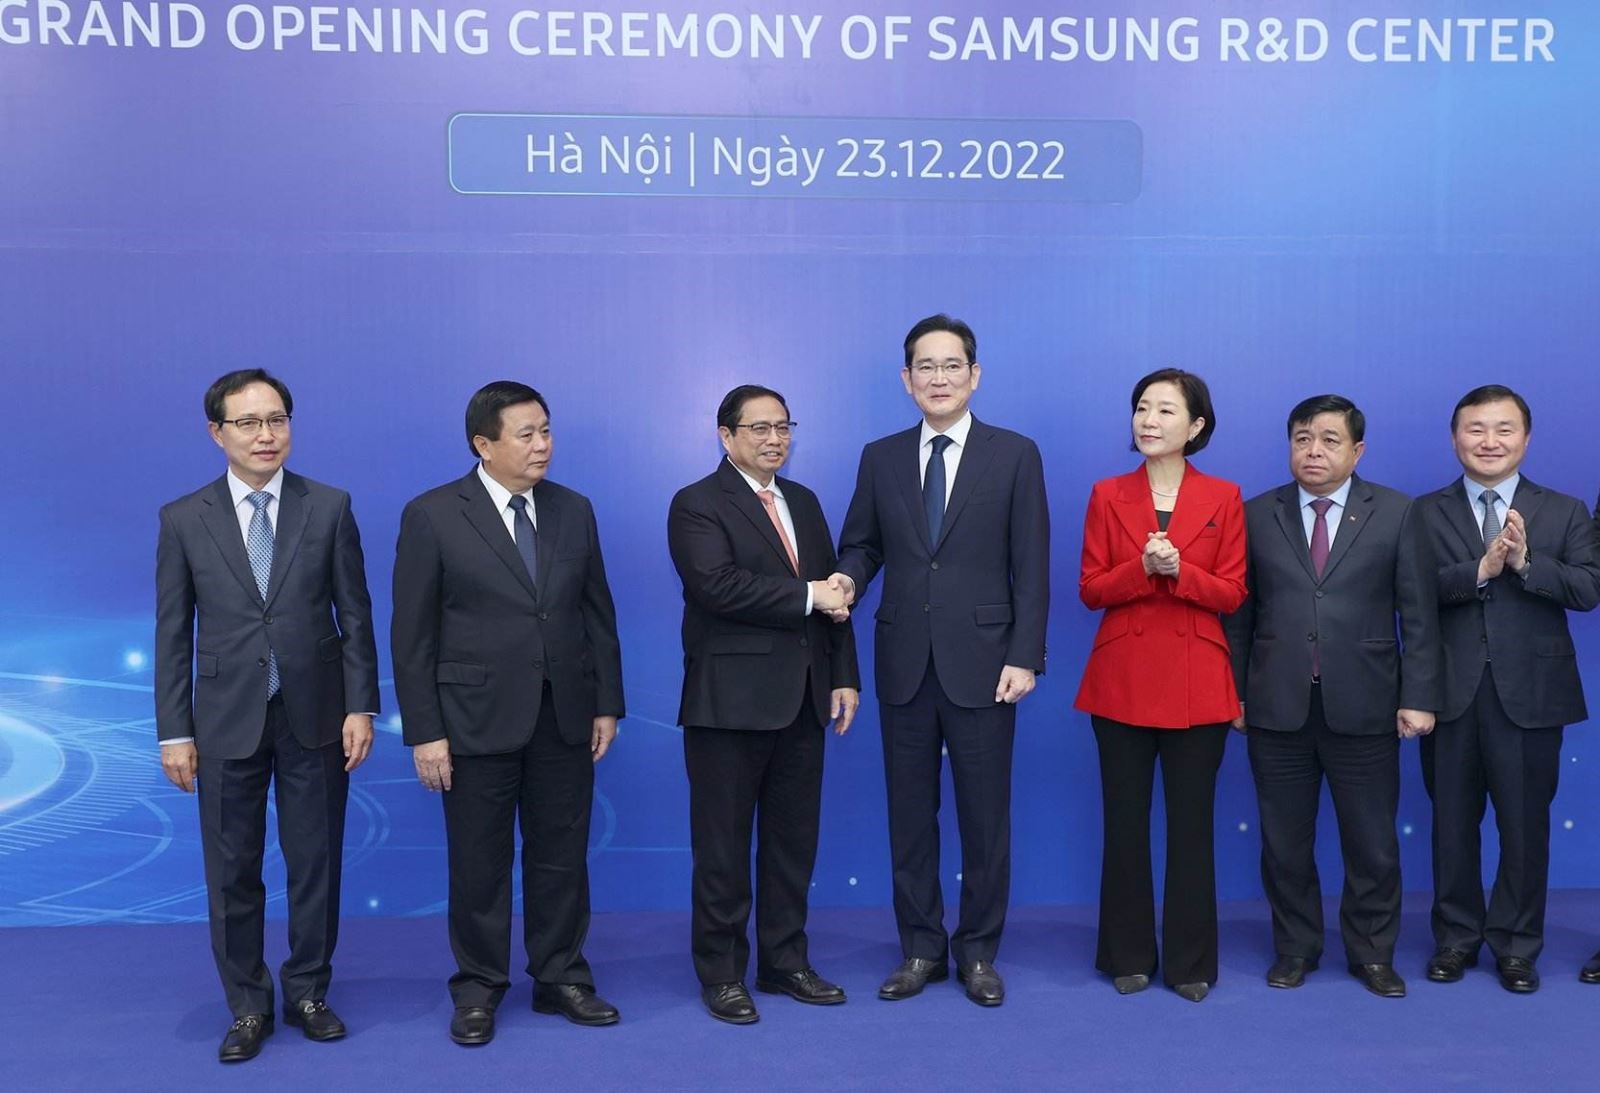 Thủ tướng Phạm Minh Chính bắt tay Chủ tịch Samsung Electronics Lee Jae-yong cùng các đại biểu tham dự buổi lễ. Ảnh: TTXVN